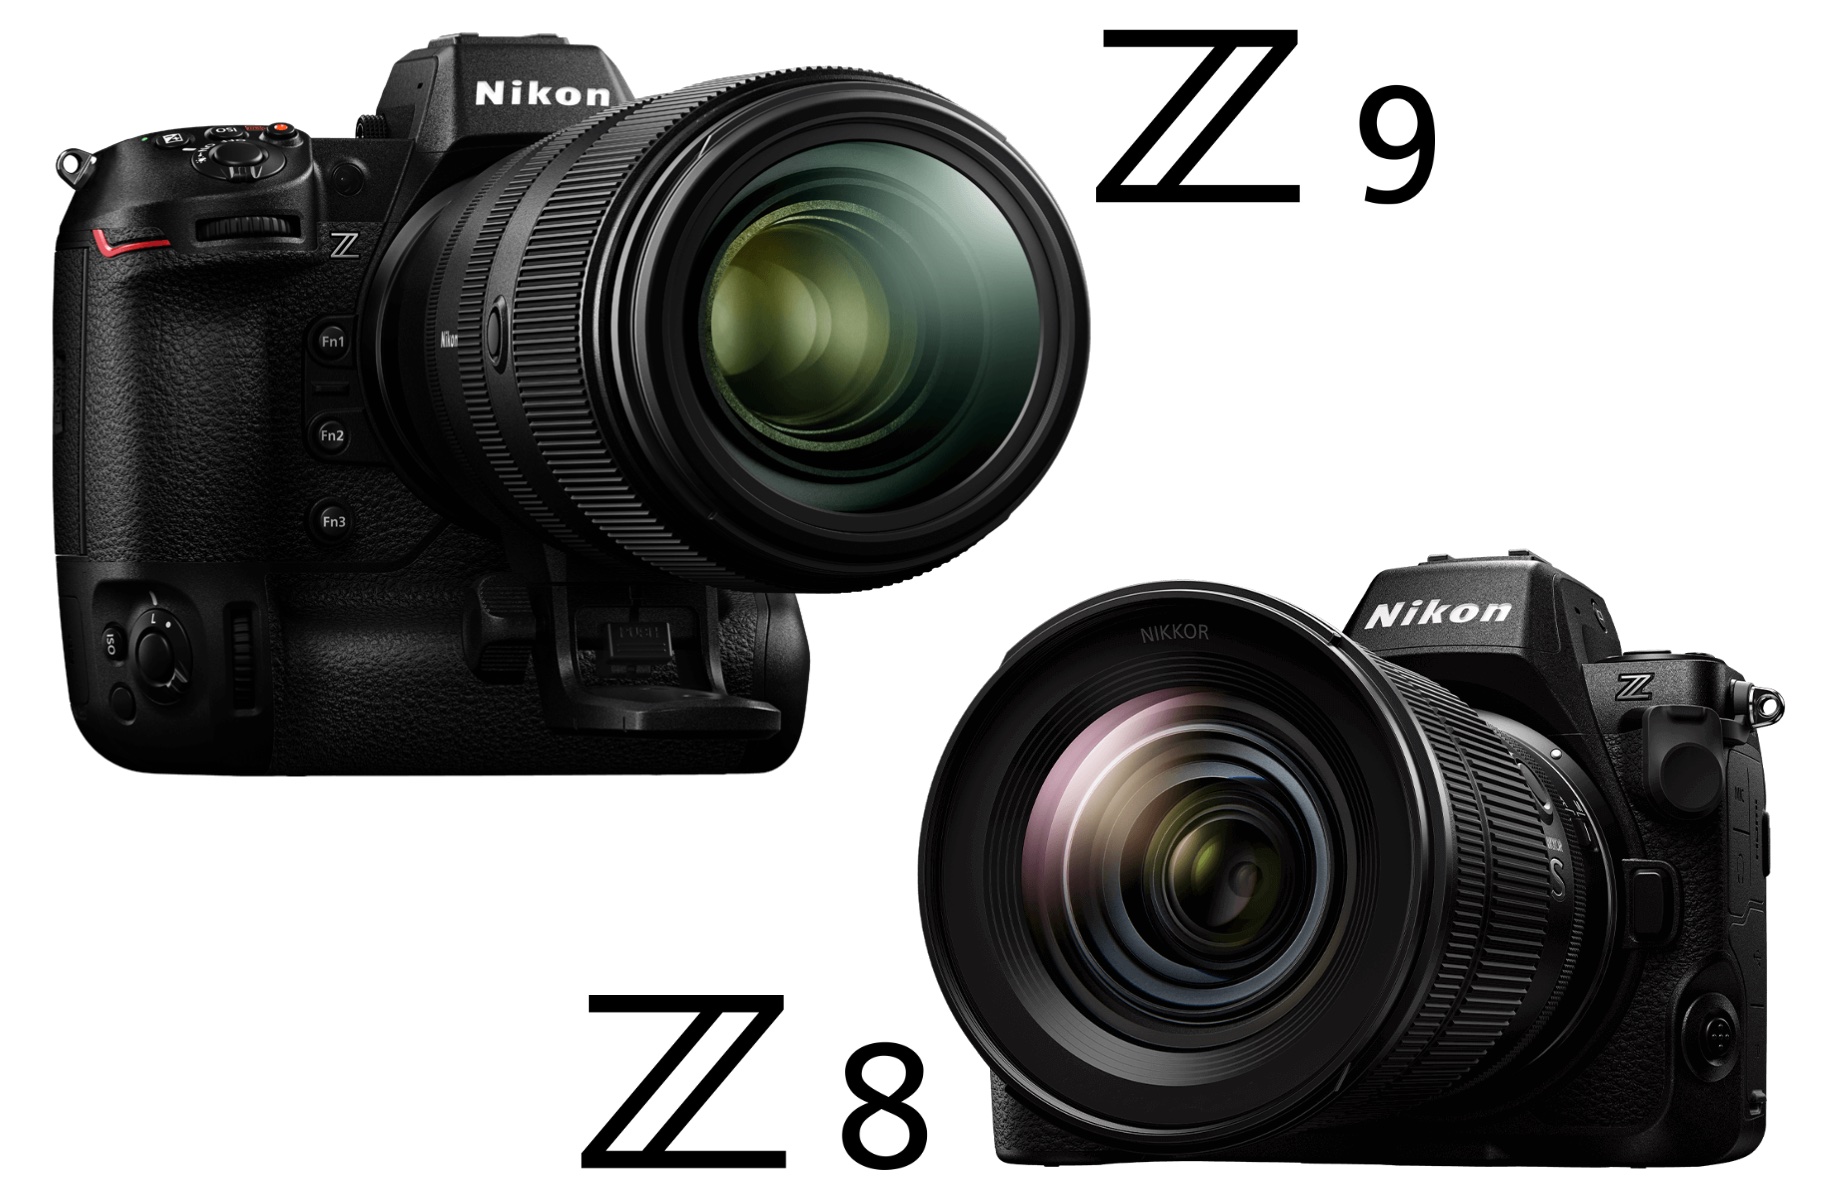 Nikon Z8 Initial Review: Awww It's a Baby Z9! 